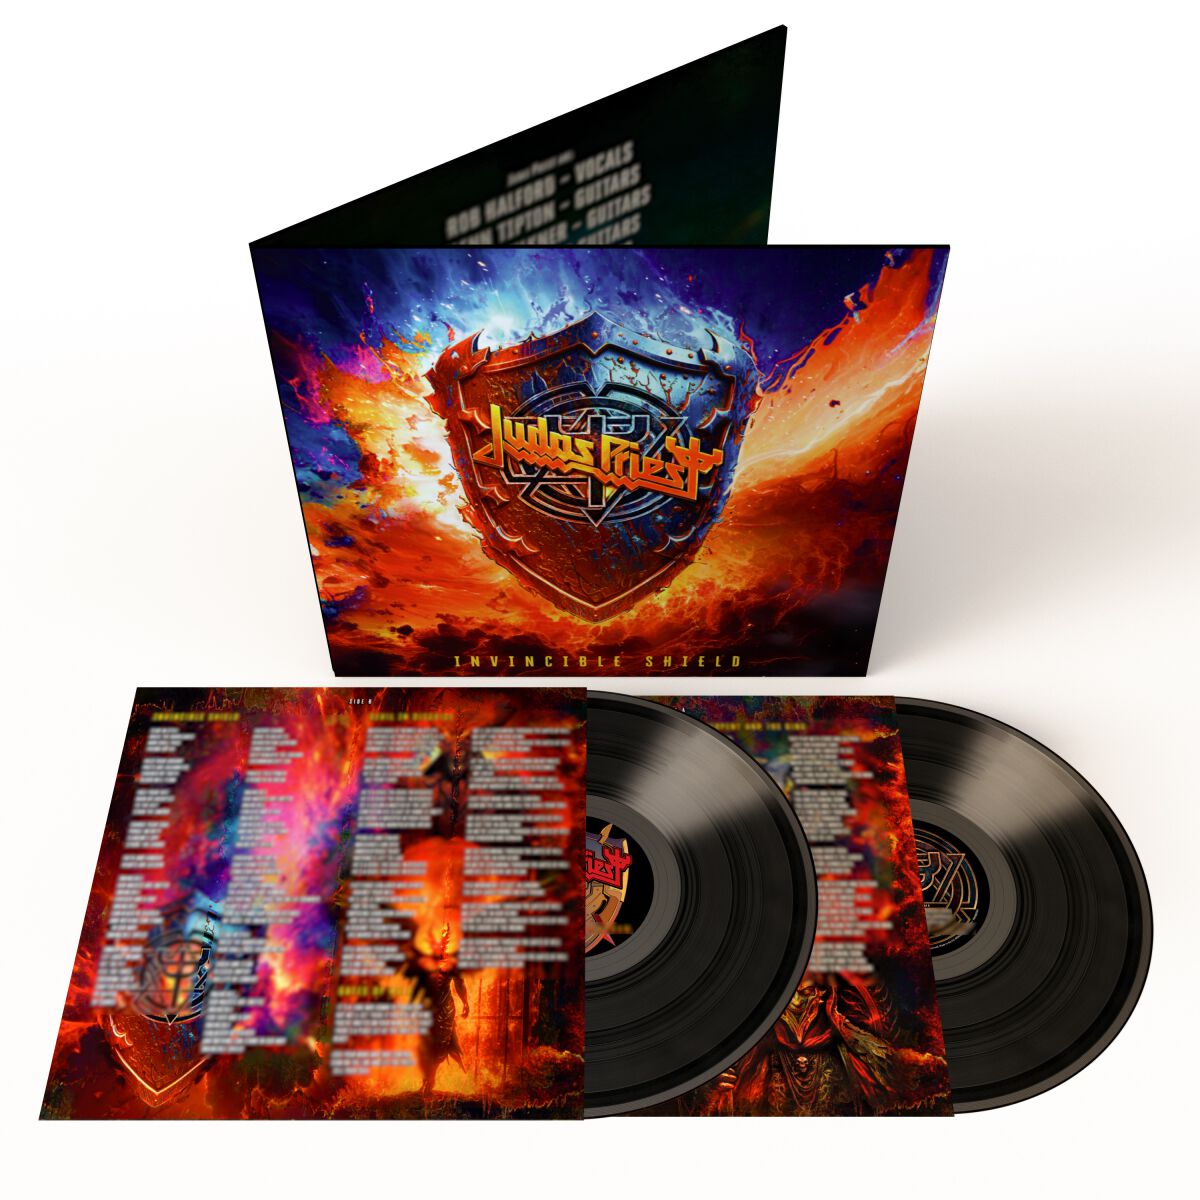 Judas Priest Invincible shield (Alternative Artwork) LP multicolor